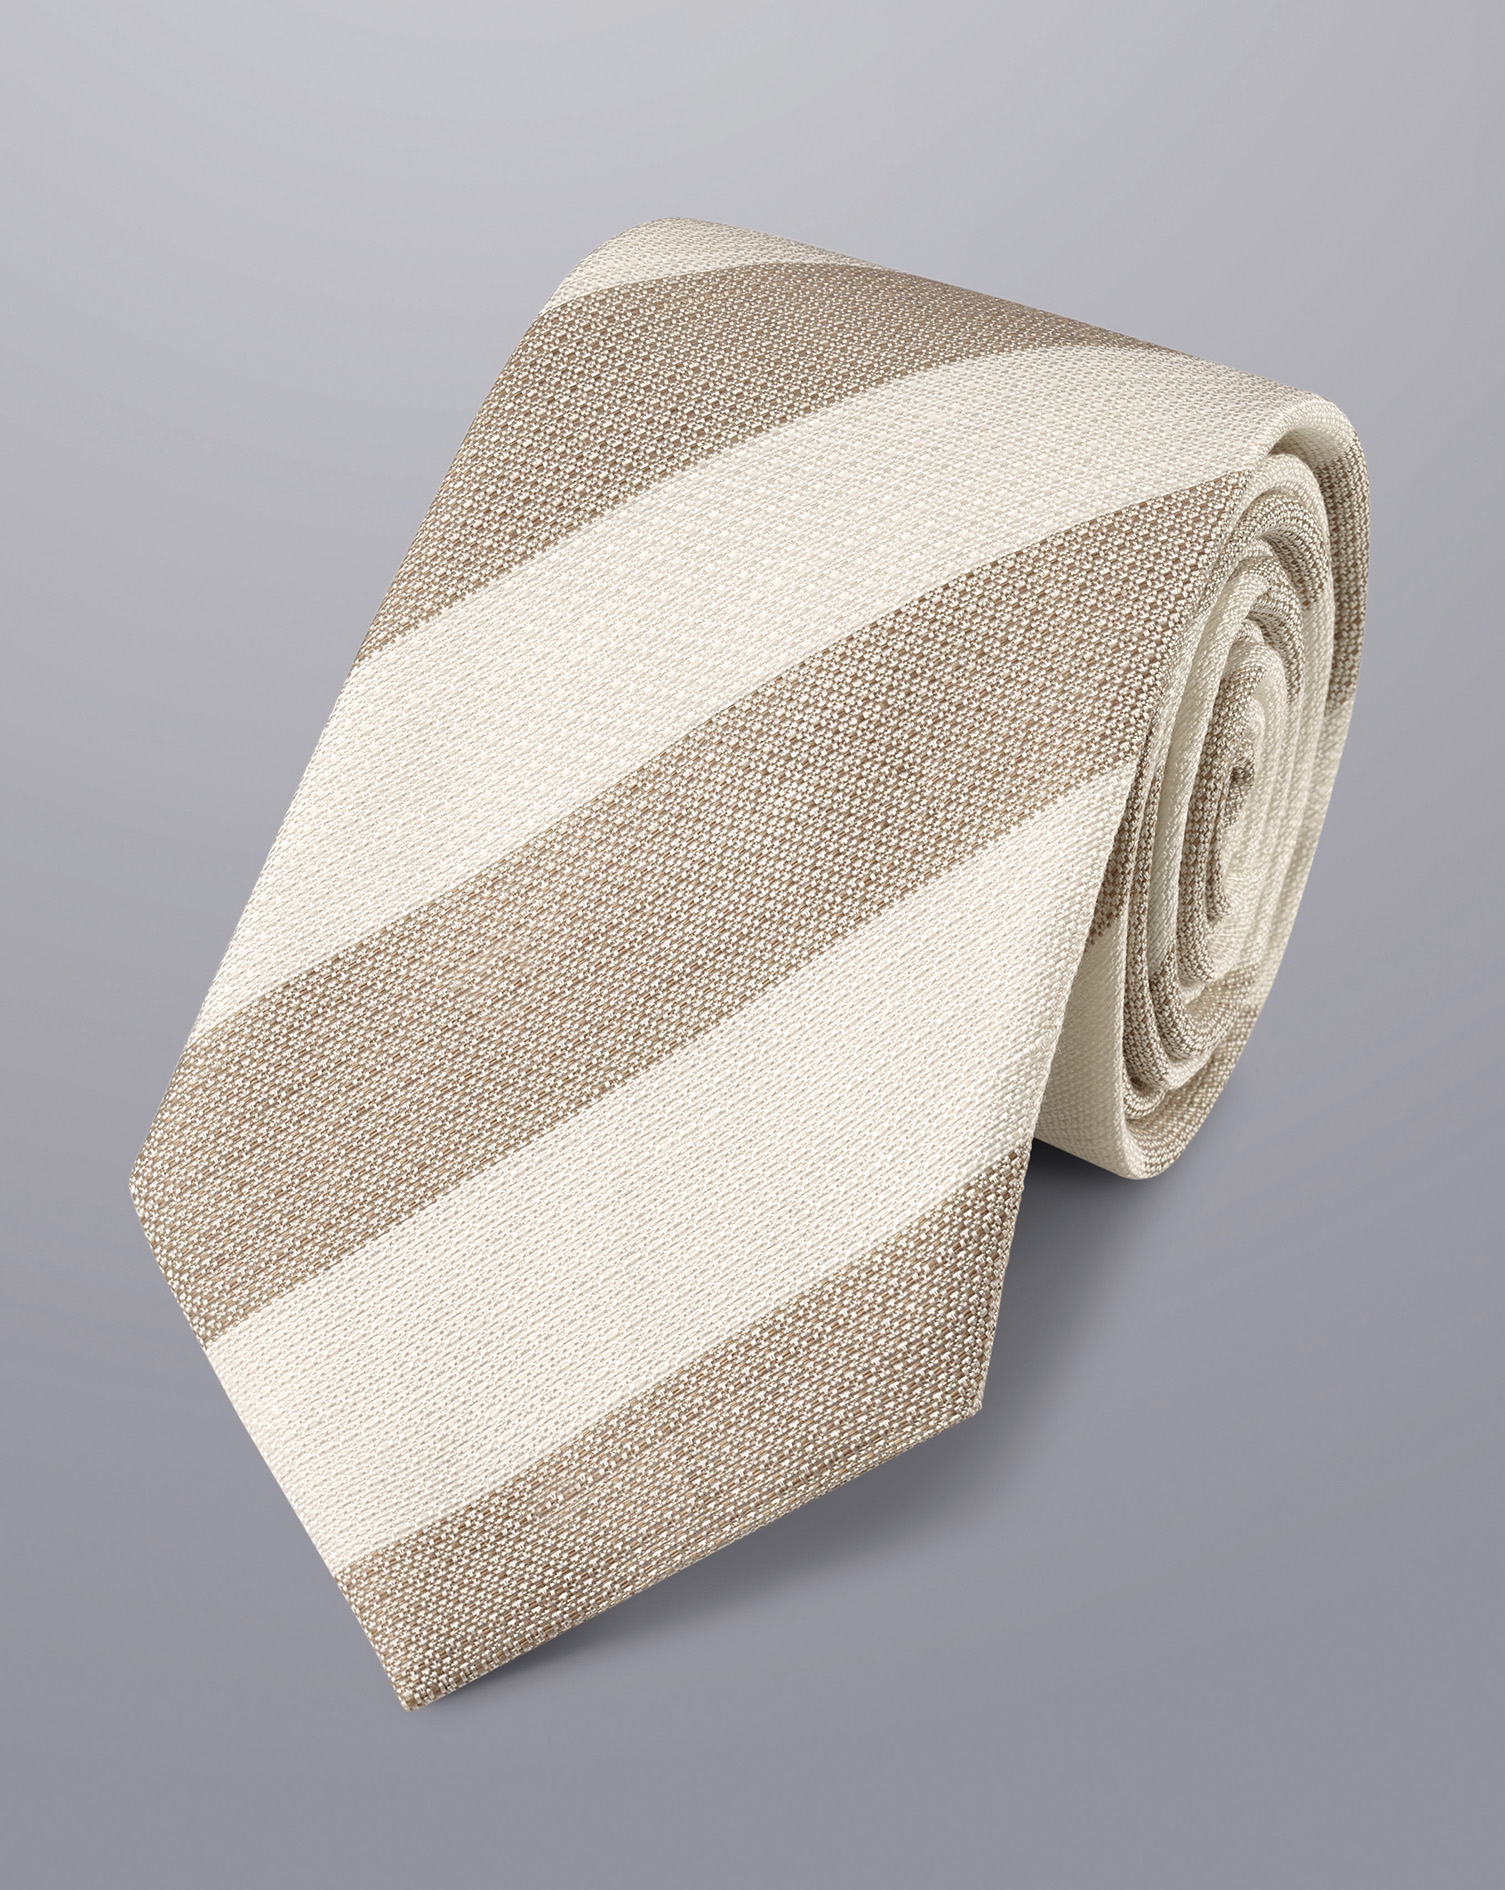 Men's Charles Tyrwhitt Stripe Linen Tie - Stone & Ivory Neutral Silk
